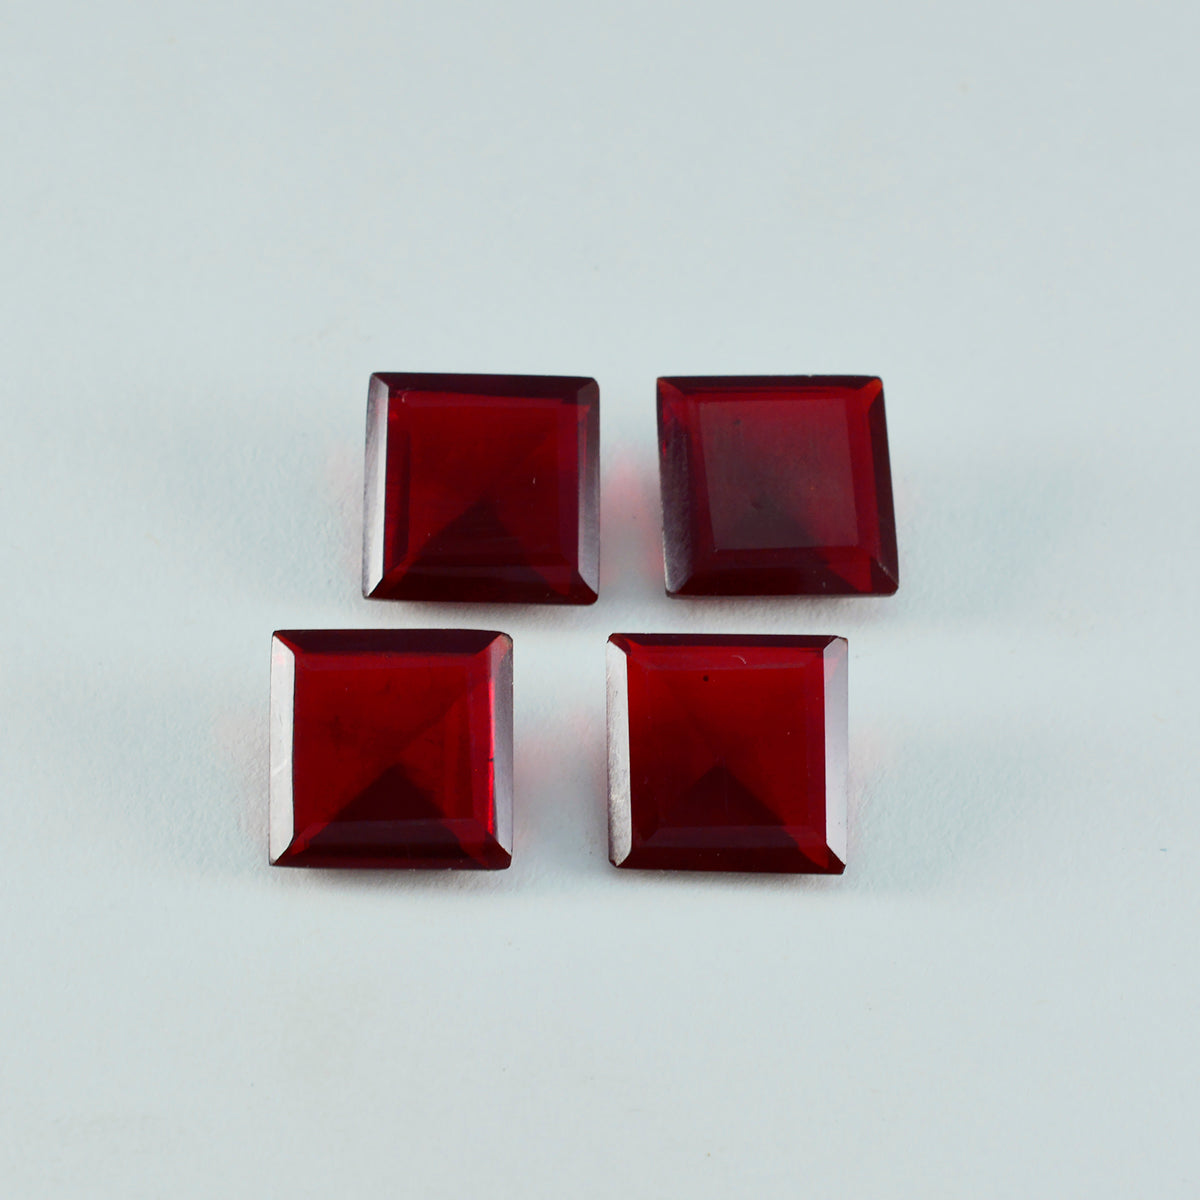 riyogems 1 шт. красный рубин cz граненый 15x15 мм квадратной формы милый качественный камень